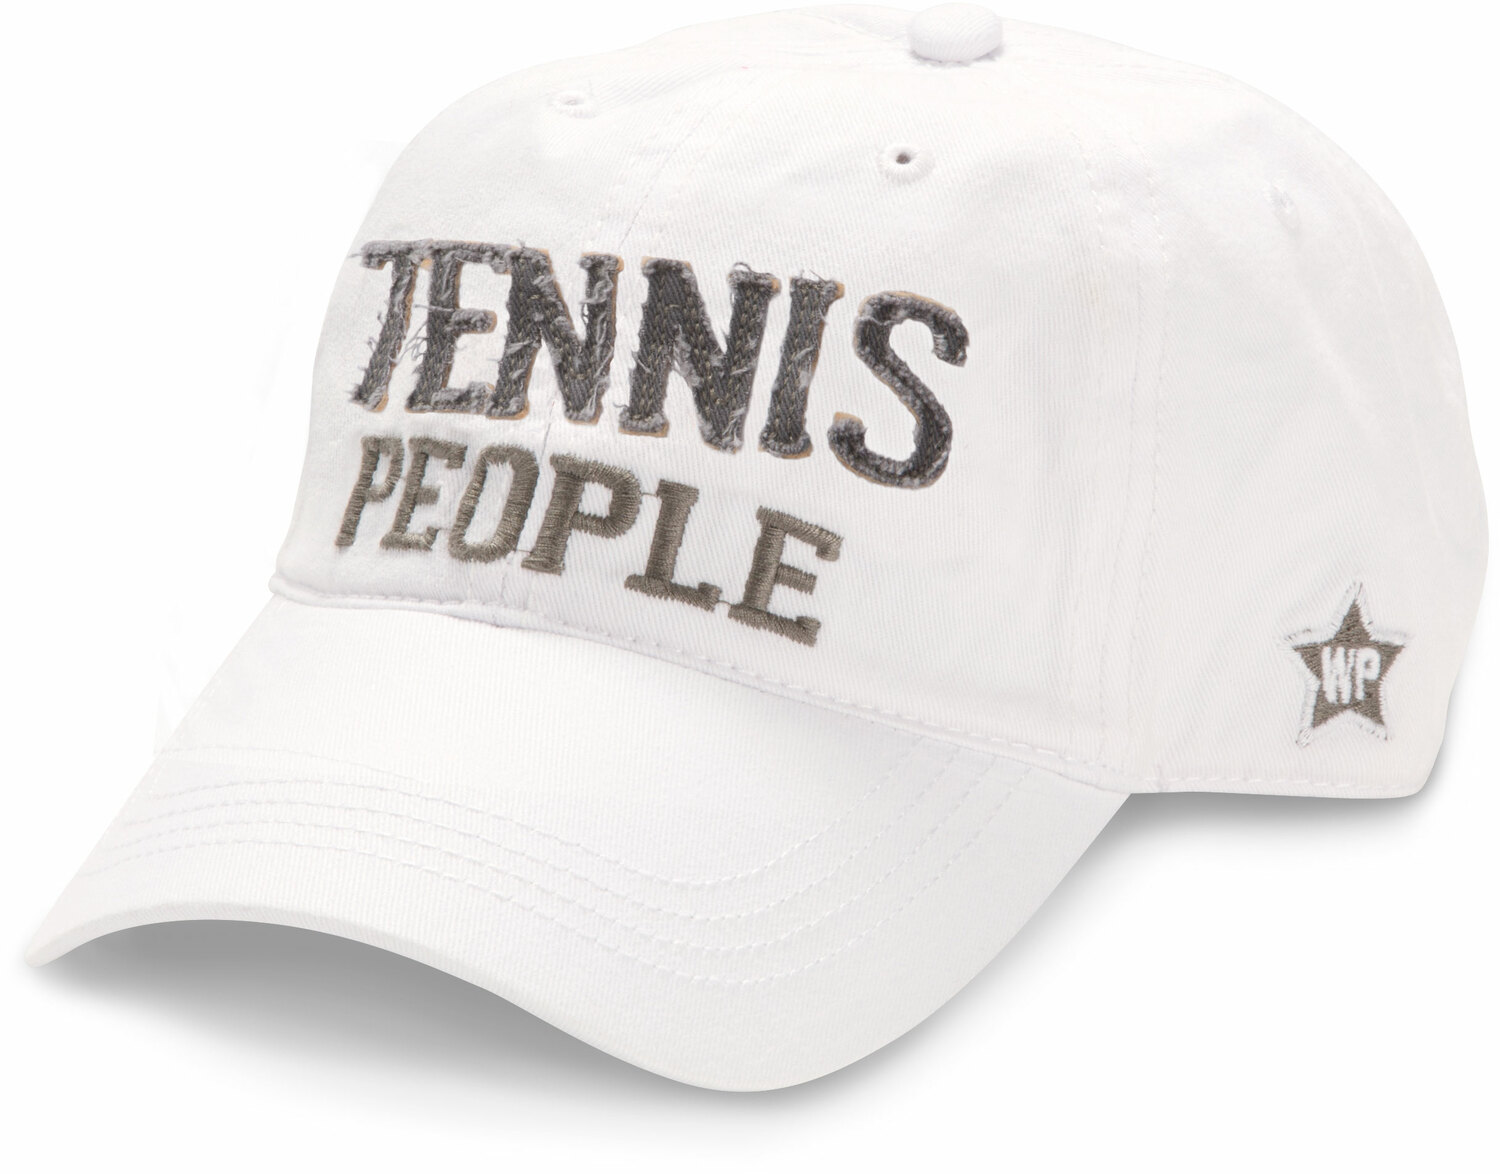 Tennis People by We People - Tennis People - White Adjustable Hat